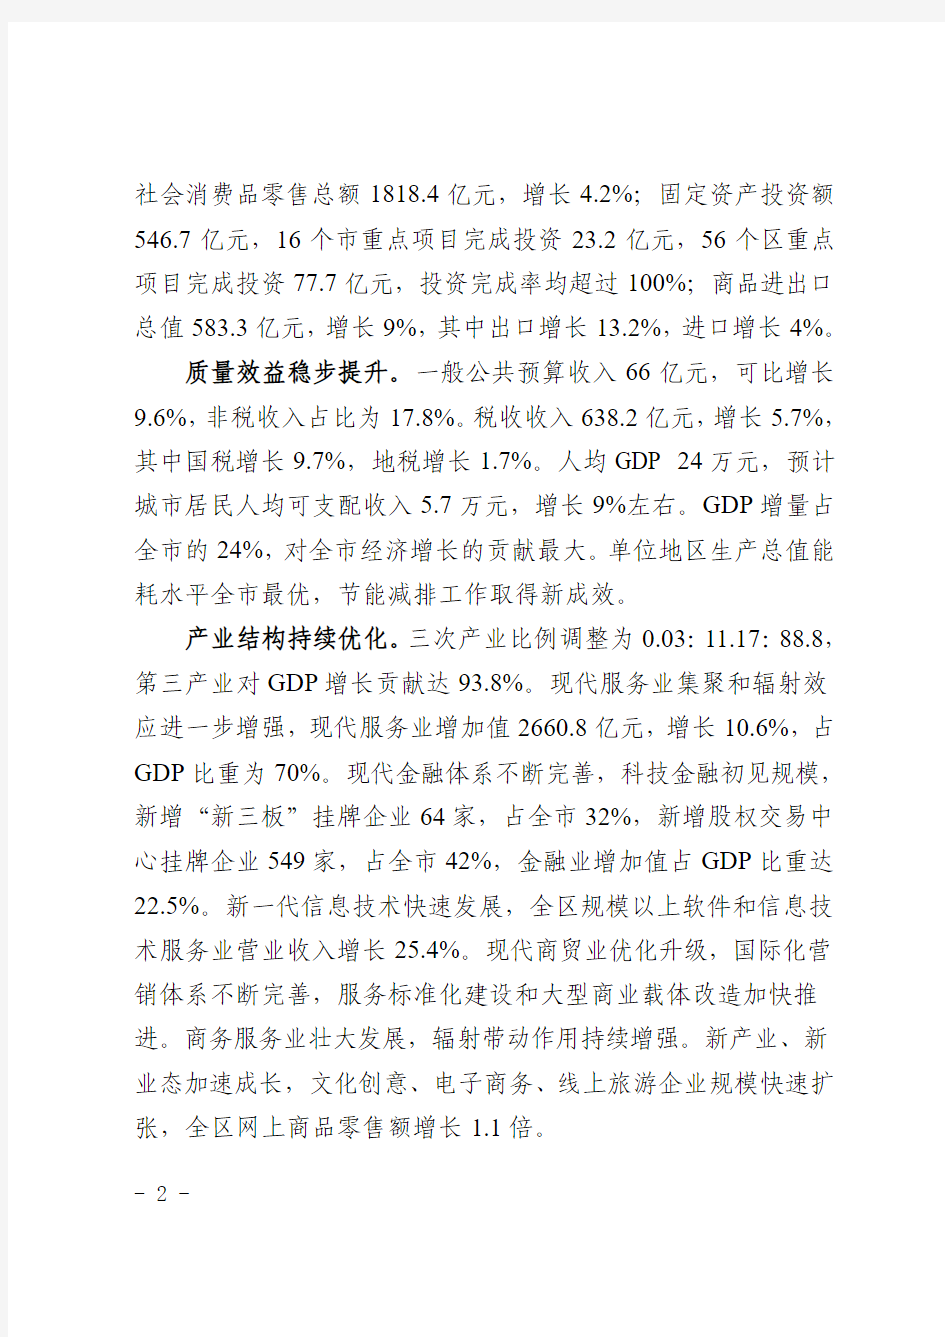 广州天河区2016年国民经济和社会发展